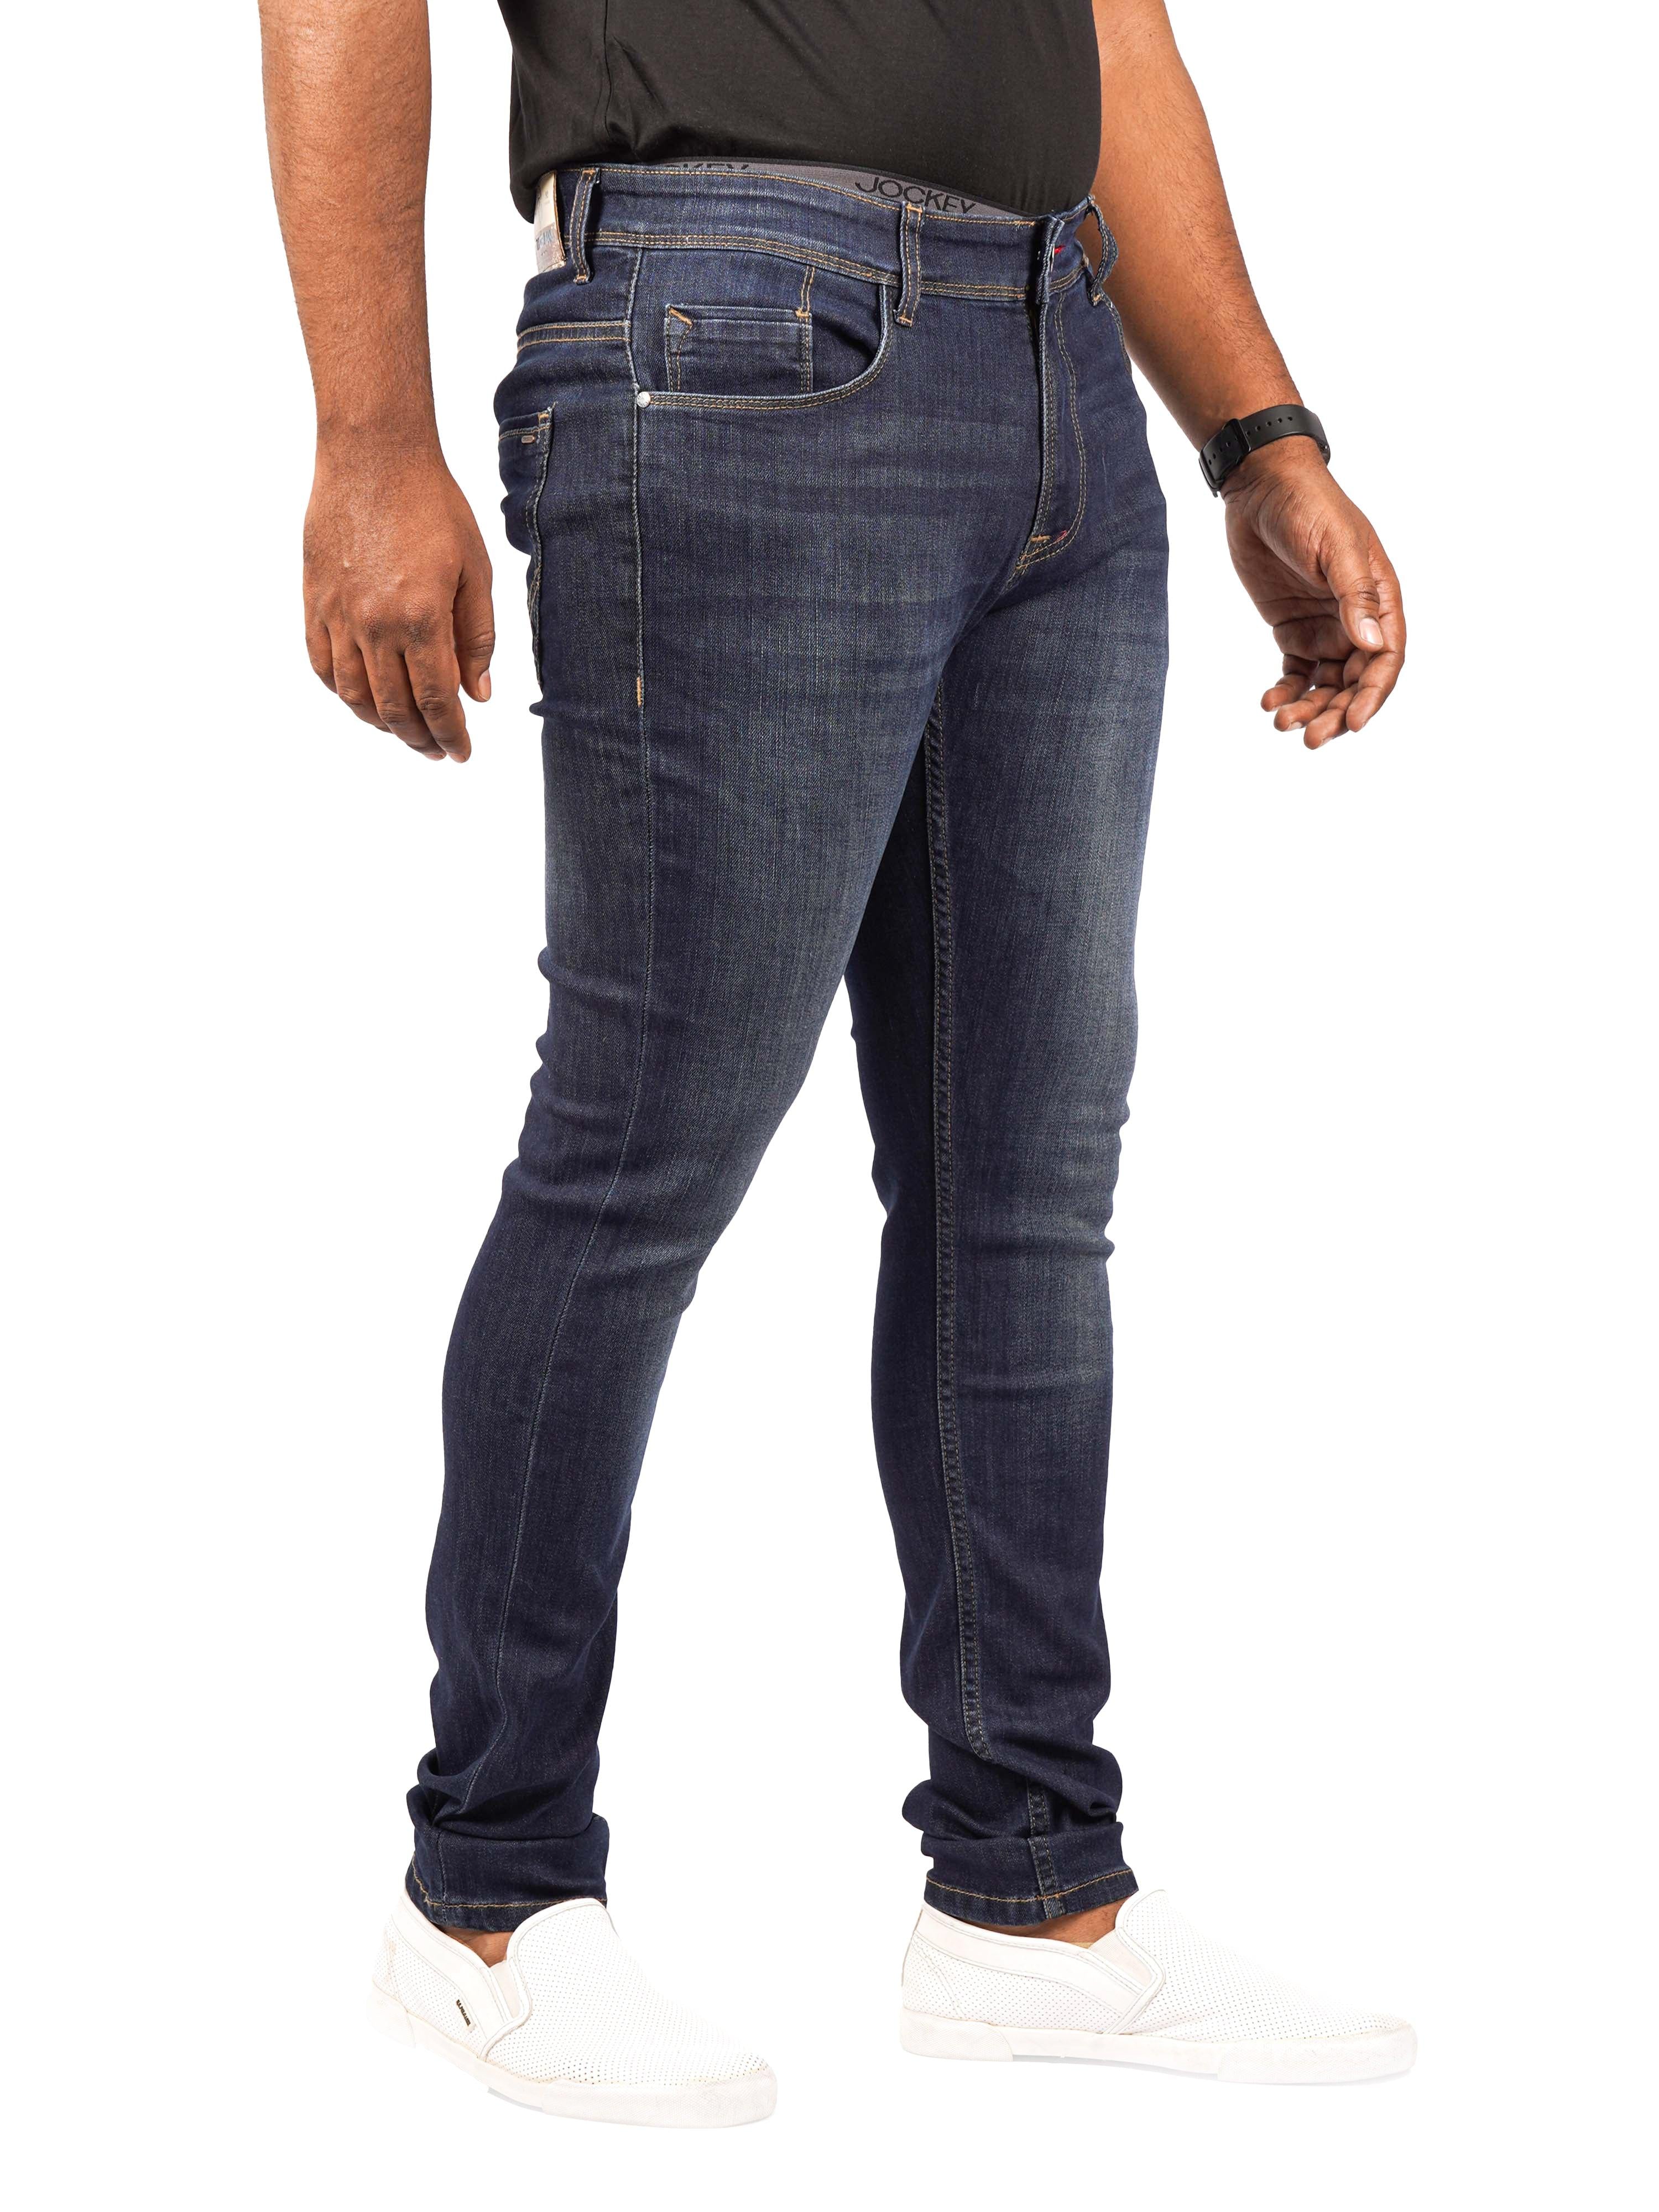 Men Skinny-Fit Blackish Blue Jeans - Triggerjeans